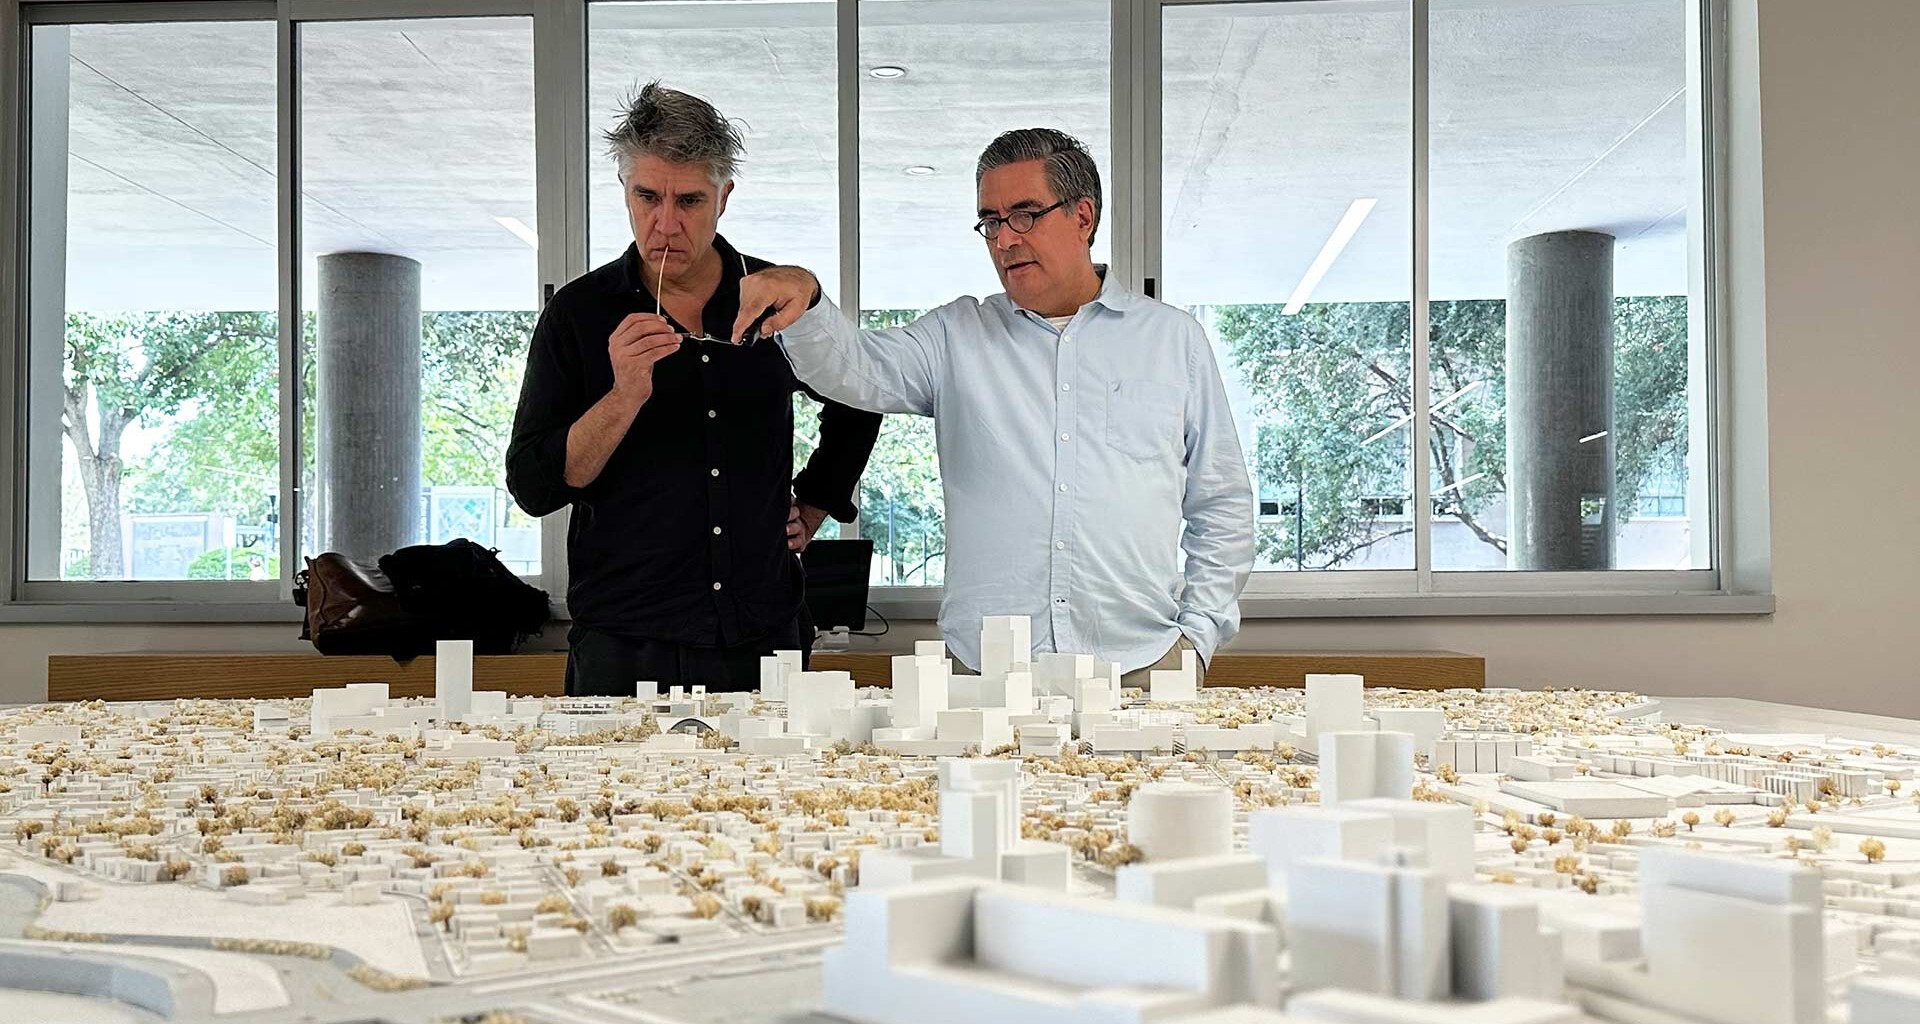 Алехандро Аравена выбран проектировщиком нового пространства для архитектуры, искусства и дизайна в Мексике